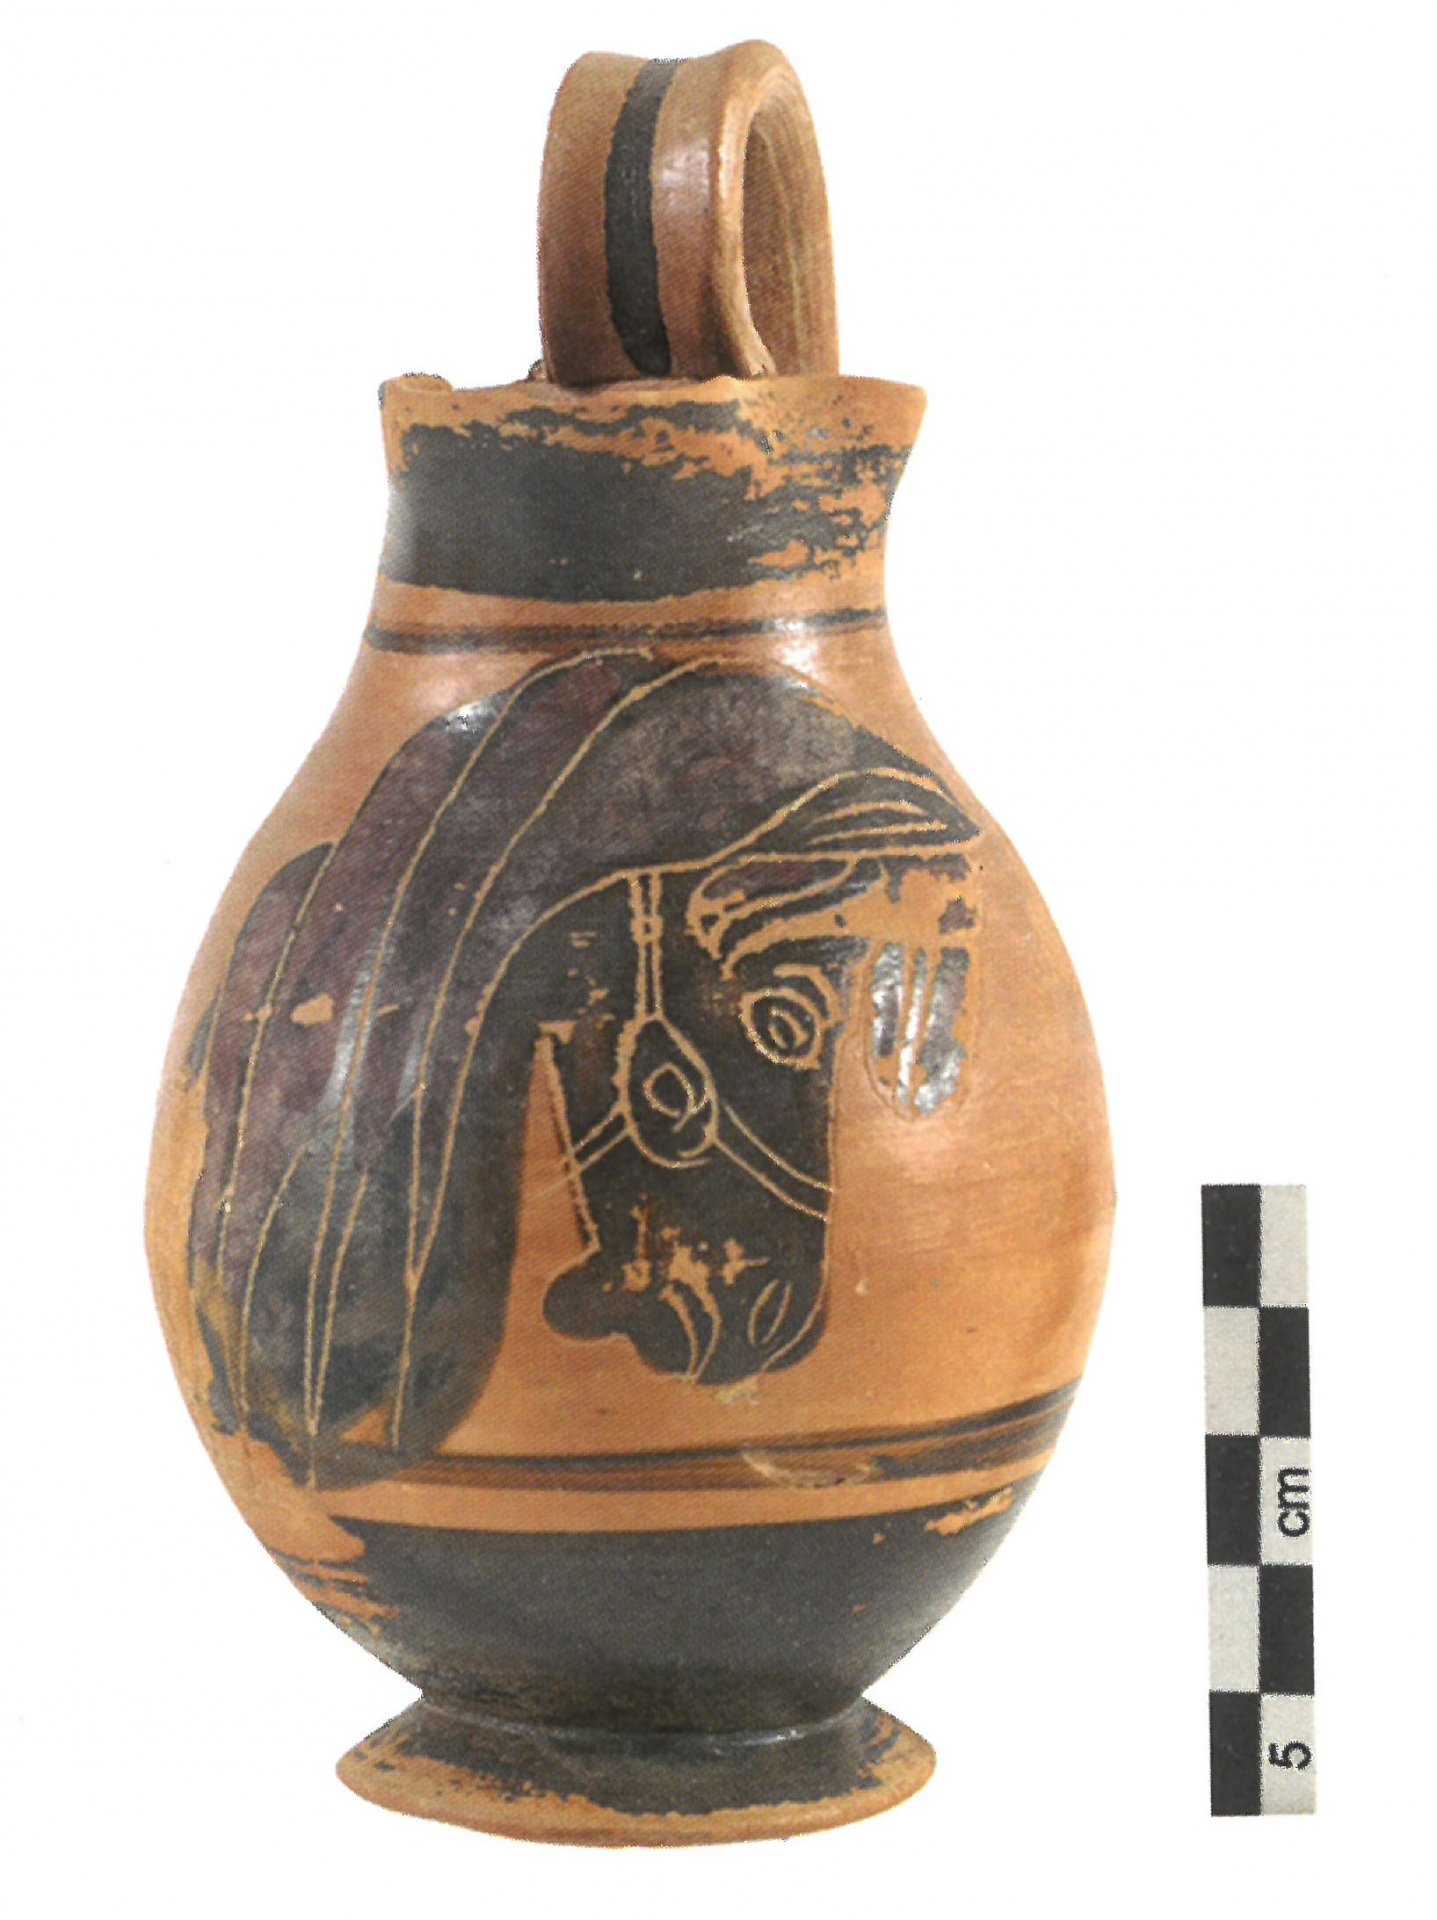 Miniaturní oinochoé (konvice na víno), nalezená v jednom z dětských hrobů ve Phaleronu z první poloviny 6. stol. před n. l. Koně v různých scénách a podobách byli velmi oblíbeným motivem řecké malované keramiky (obrázek z knihy Hippos)
